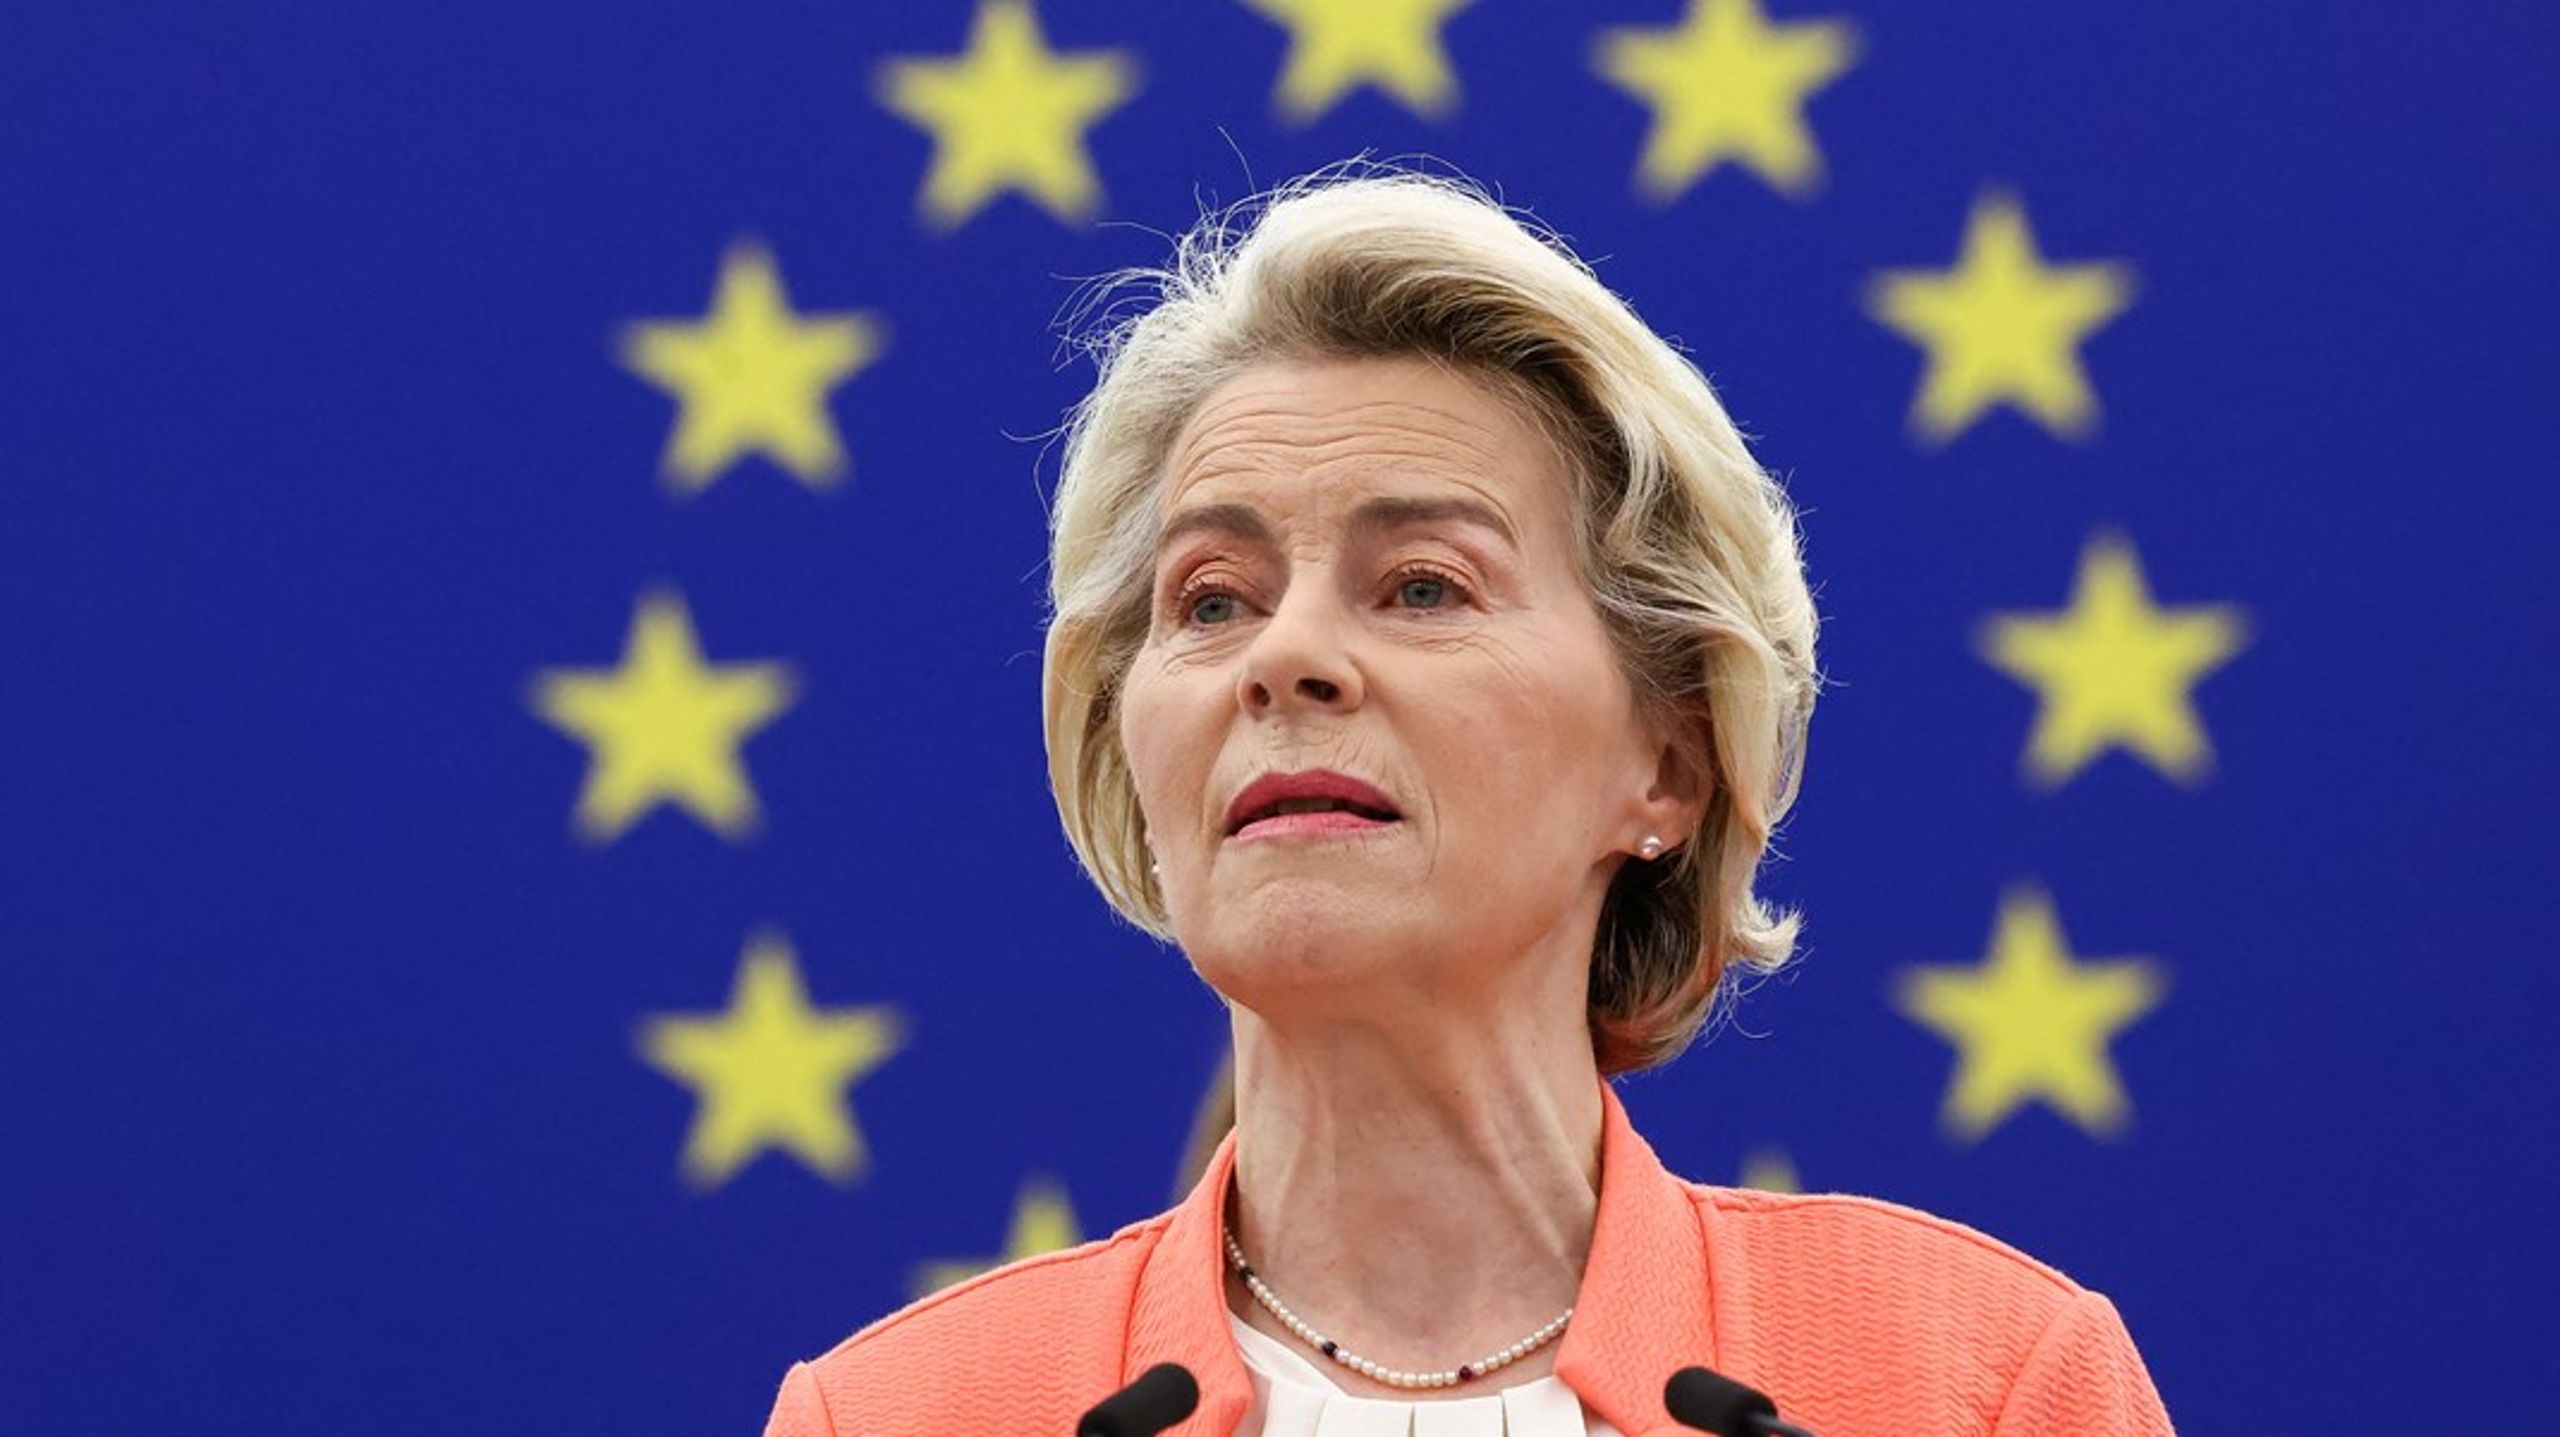 «En av ambisjonene til EU-kommisjonens president Ursula von der Leyen har vært å gjøre Europa mindre avhengig av fremmed teknologi. For å oppnå dette har hun investert betydelige midler i utvikling av kunstig intelligens (KI), som er en samling teknologier som søker å gjenskape menneskelig innsikt og refleksjoner. Men i de fire årene som har gått, har gapet mellom Europa og USA bare vokst», skriver innleggsforfatterne.